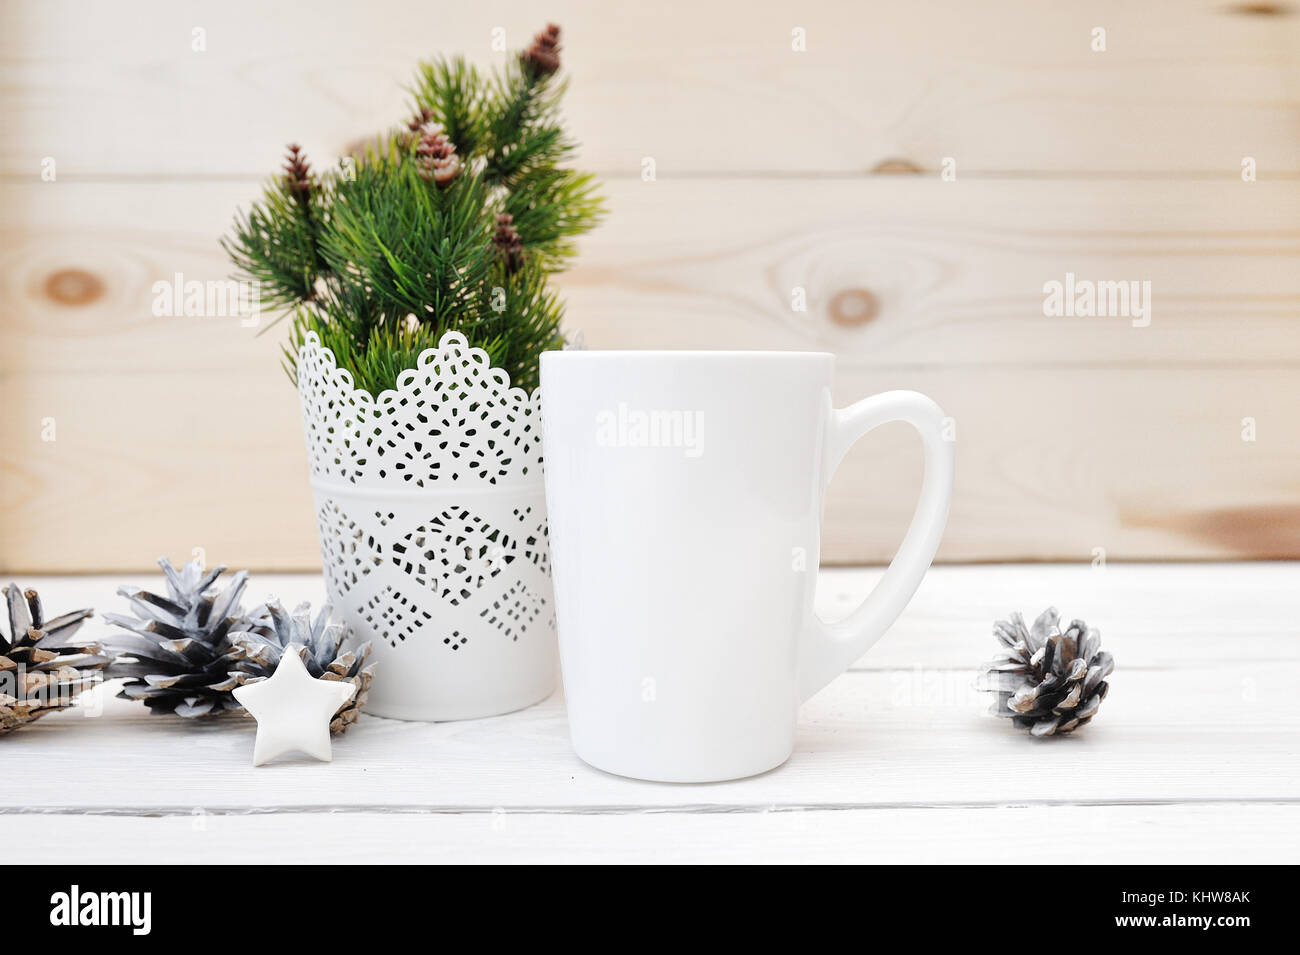 Weihnachten mock up eingerichteten Lager Produkt Bild weiße Tasse, Weihnachten Szene mit einem weißen leere Kaffeetasse, dass Sie Ihr benutzerdefiniertes Design Overlay kann Stockfoto